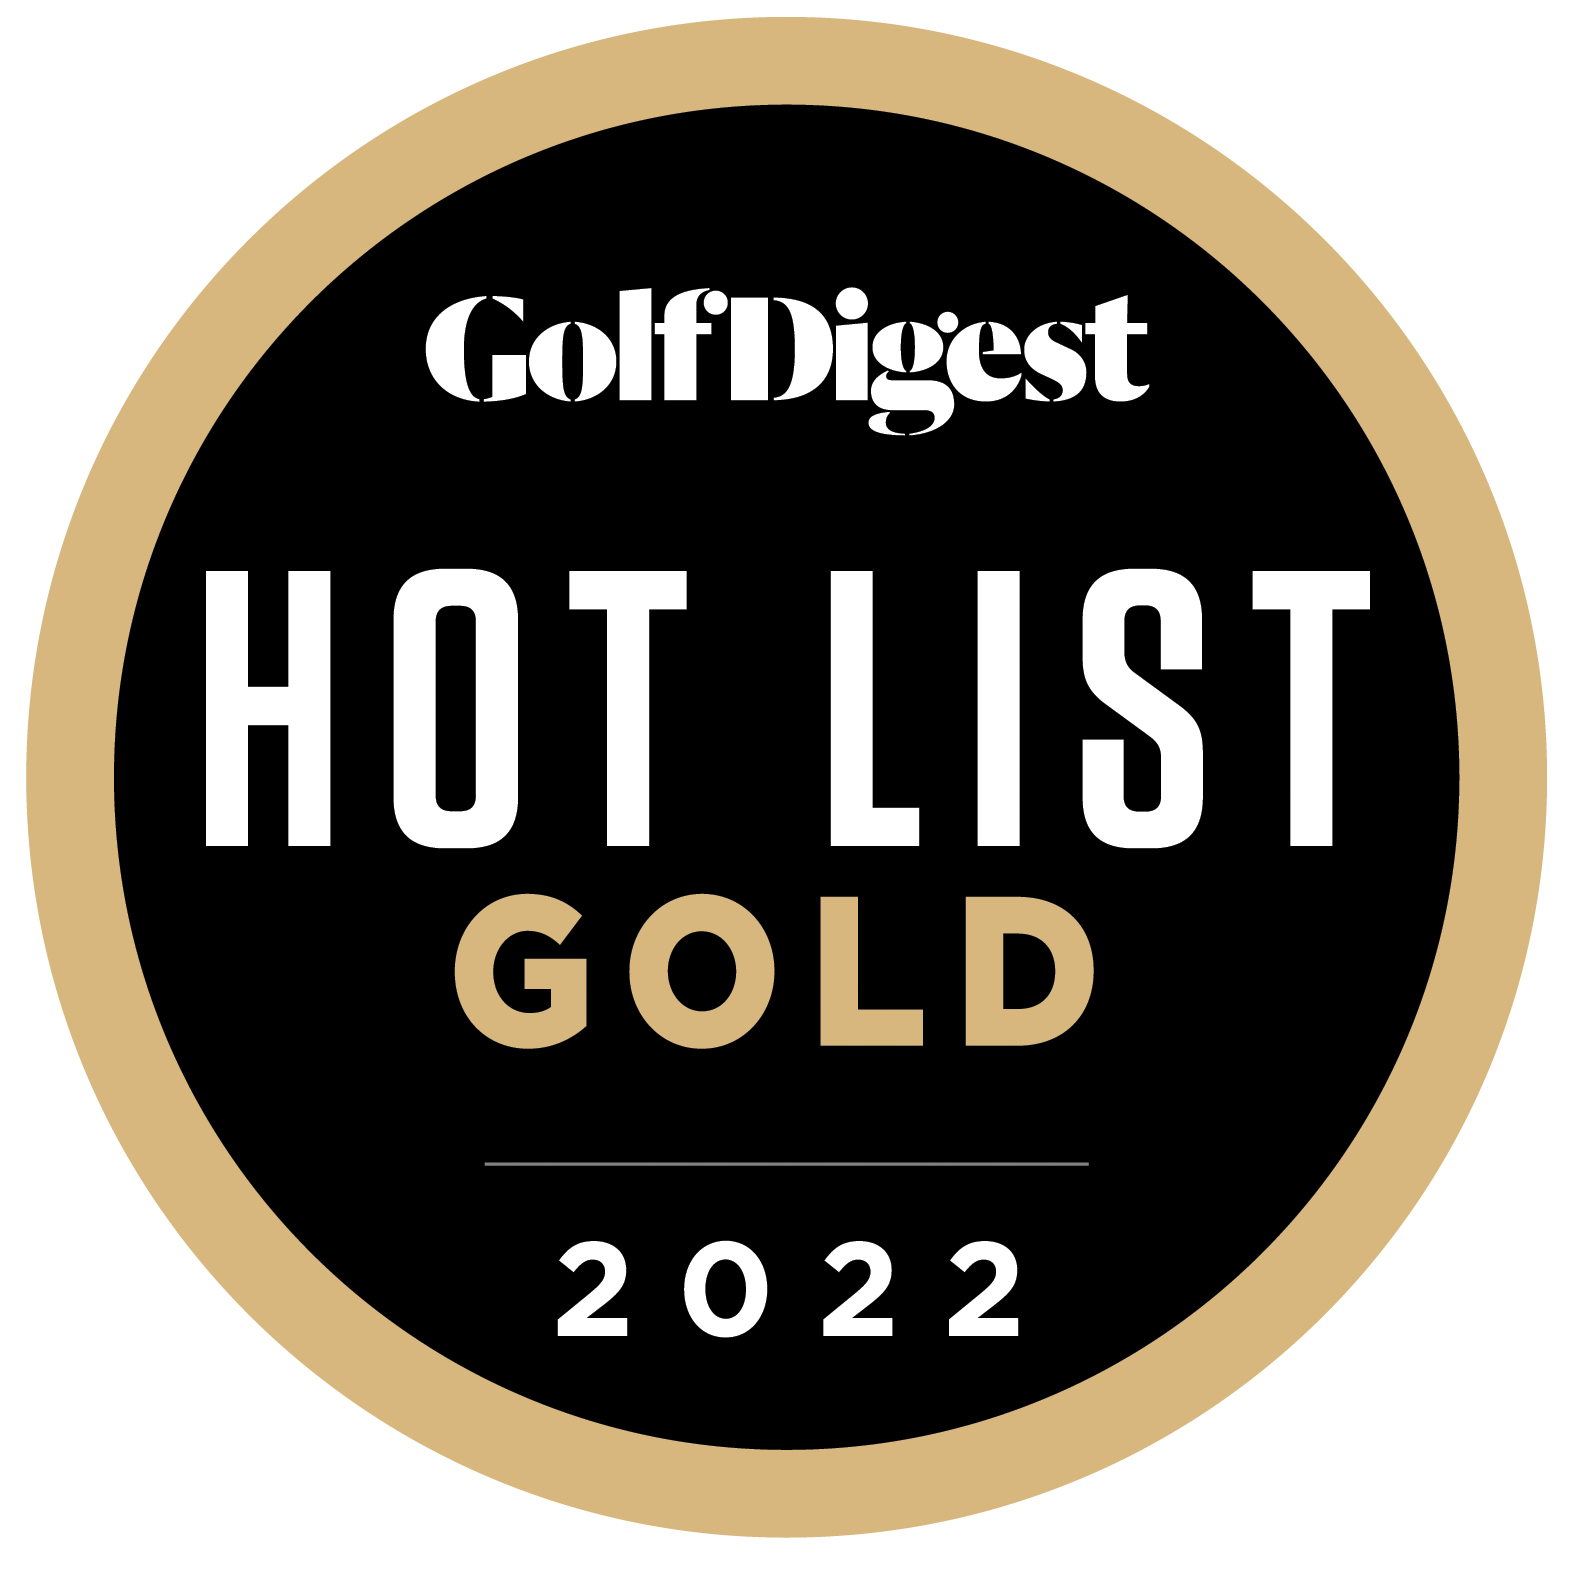 Hot List Gold 2022